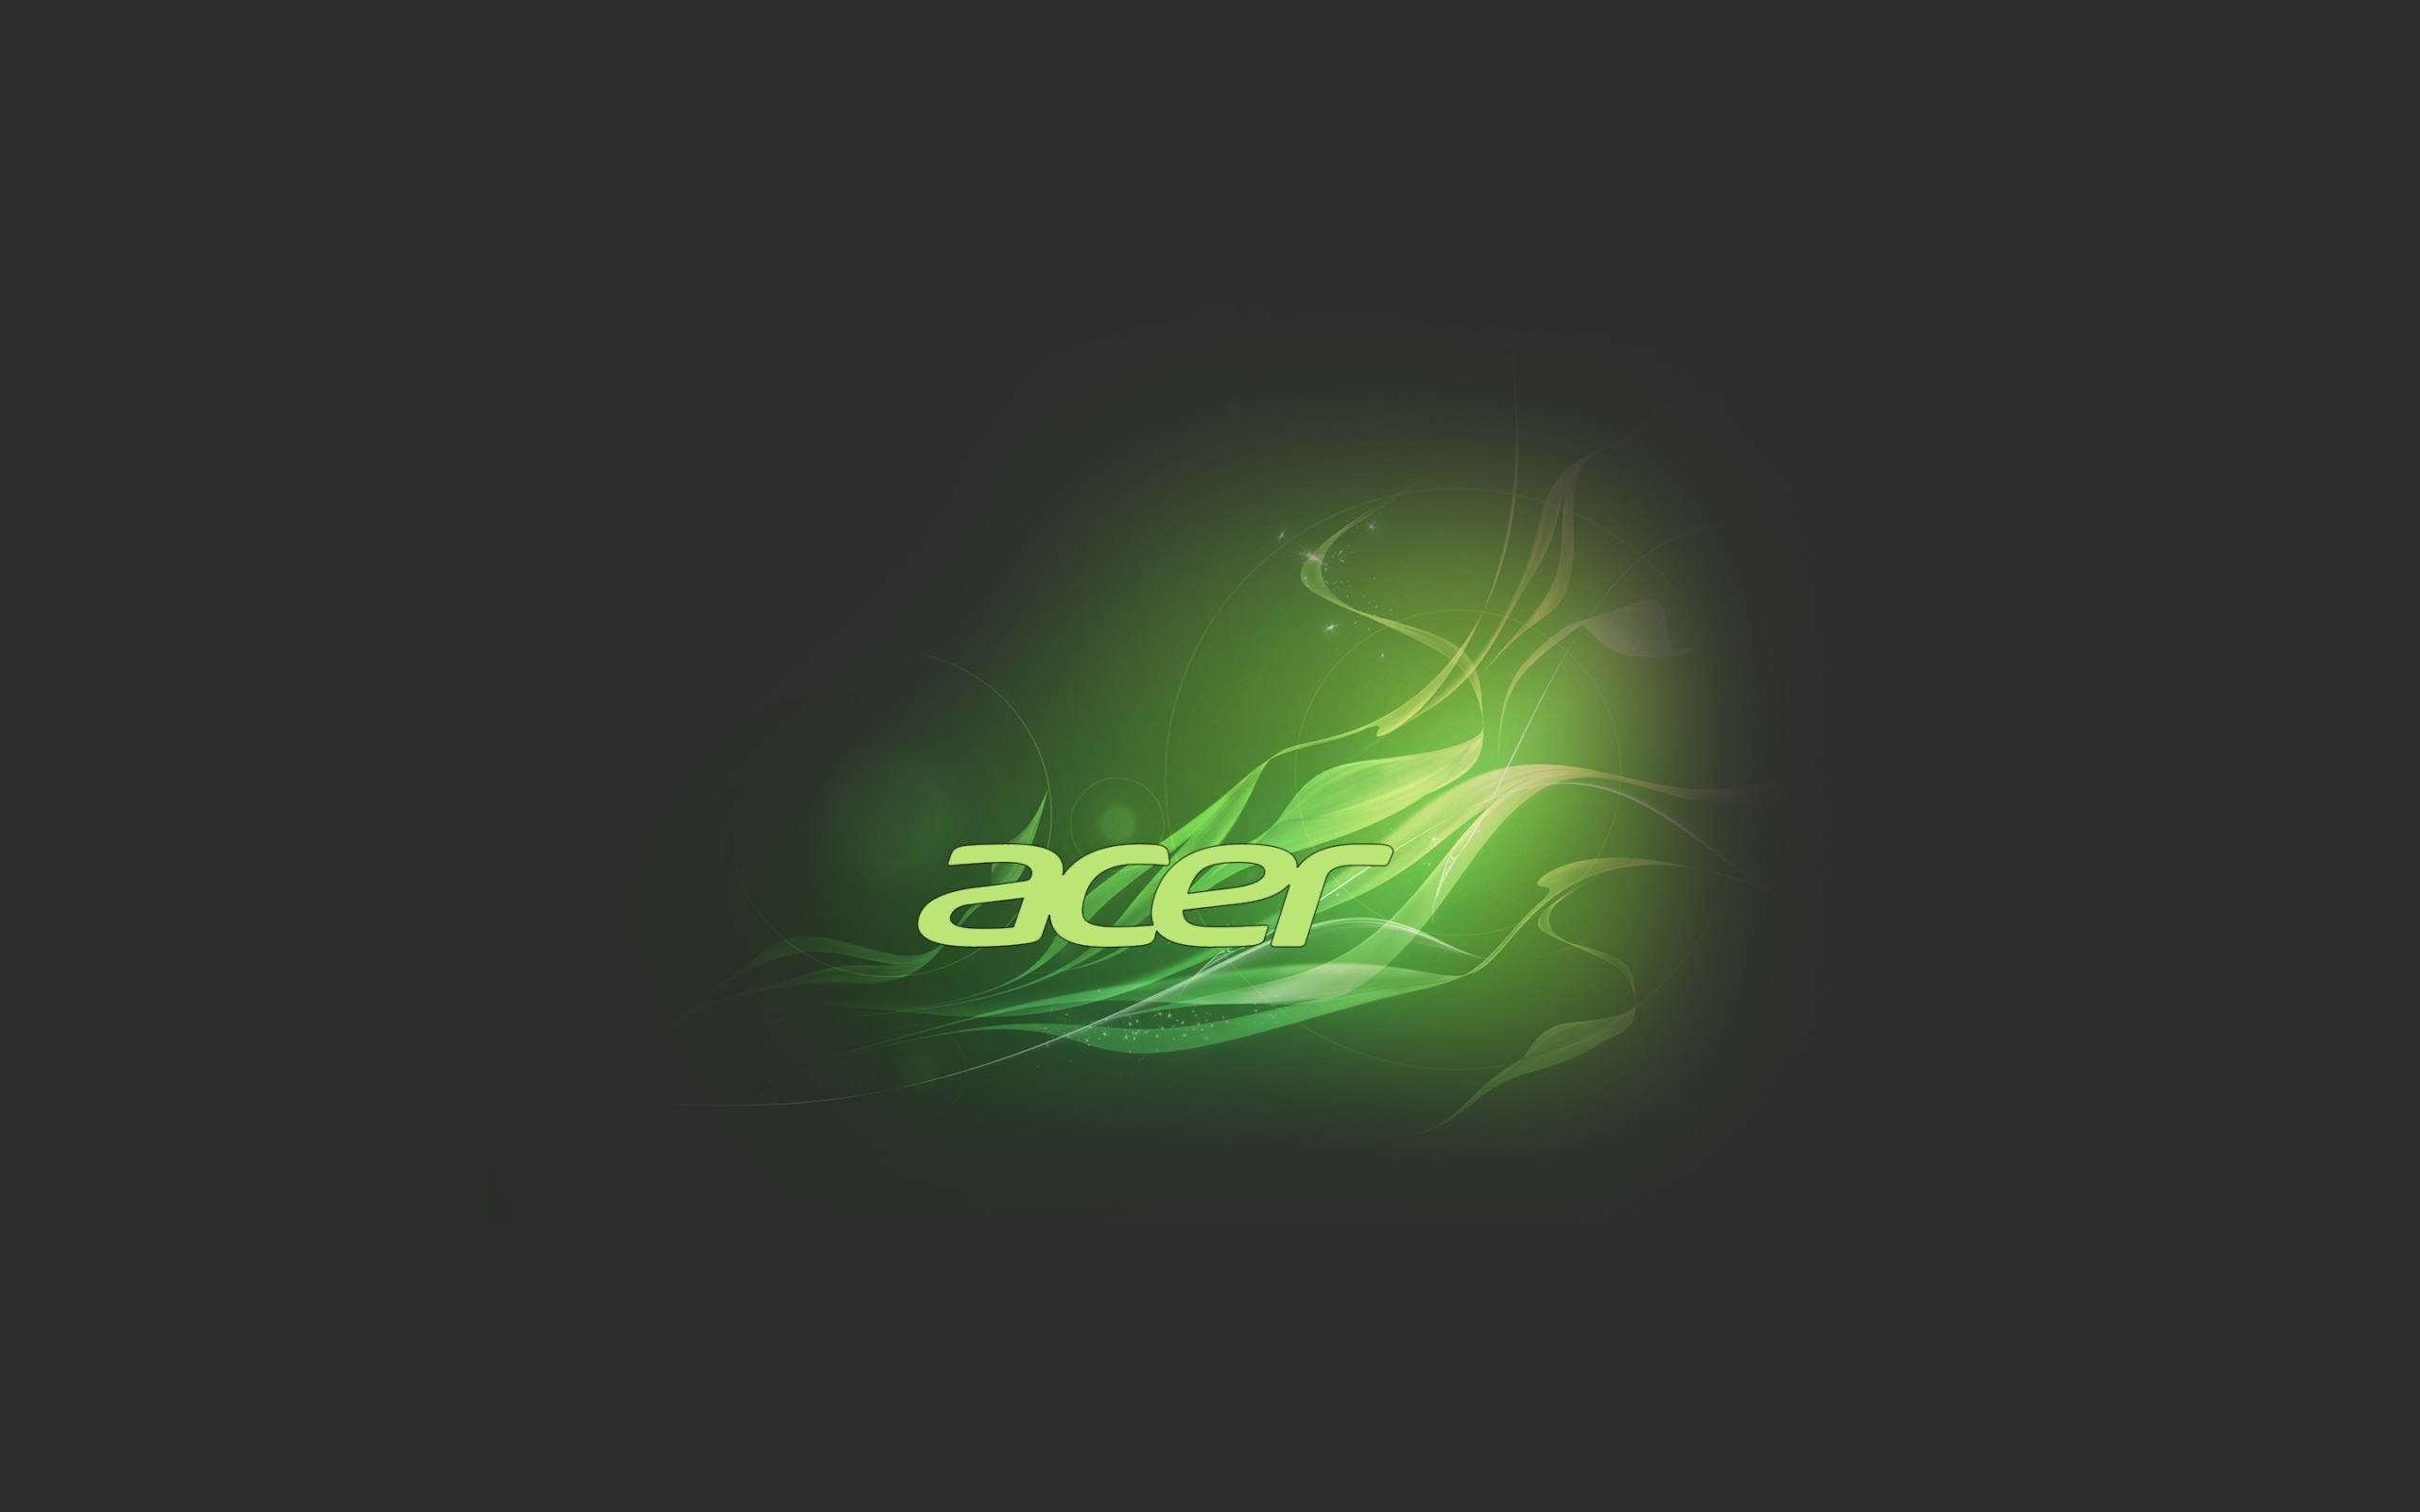 Téléchargement de pilote Acer | Windows 10, 8.1 et 7 - Driver Easy France